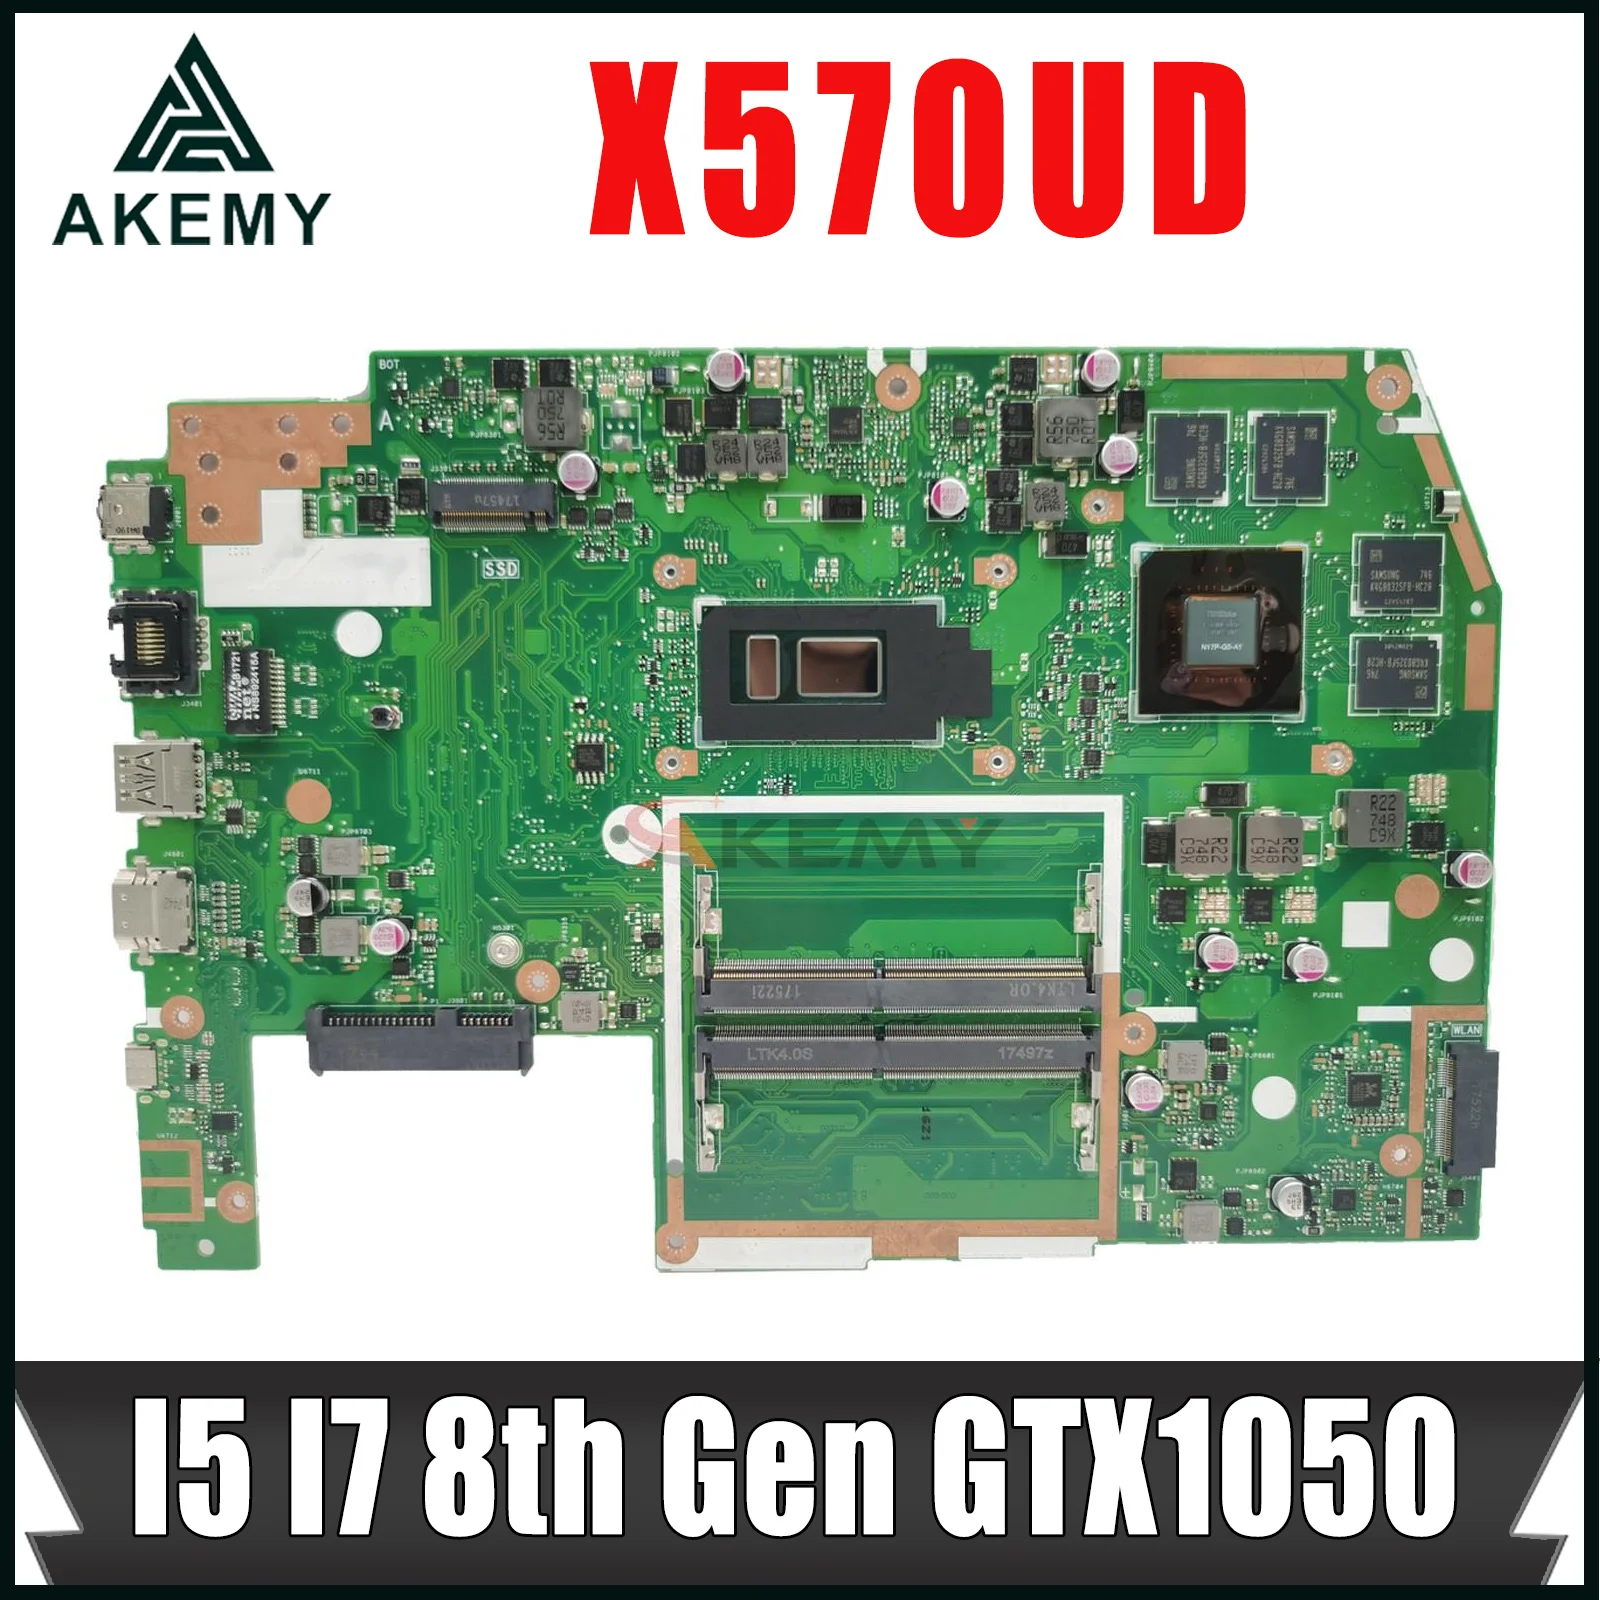 

X570UD Notebook Mainboard For ASUS TUF YX570U YX570UD X570U FX570U FX570UD Laptop Motherboard I5 I7 8th Gen GTX1050